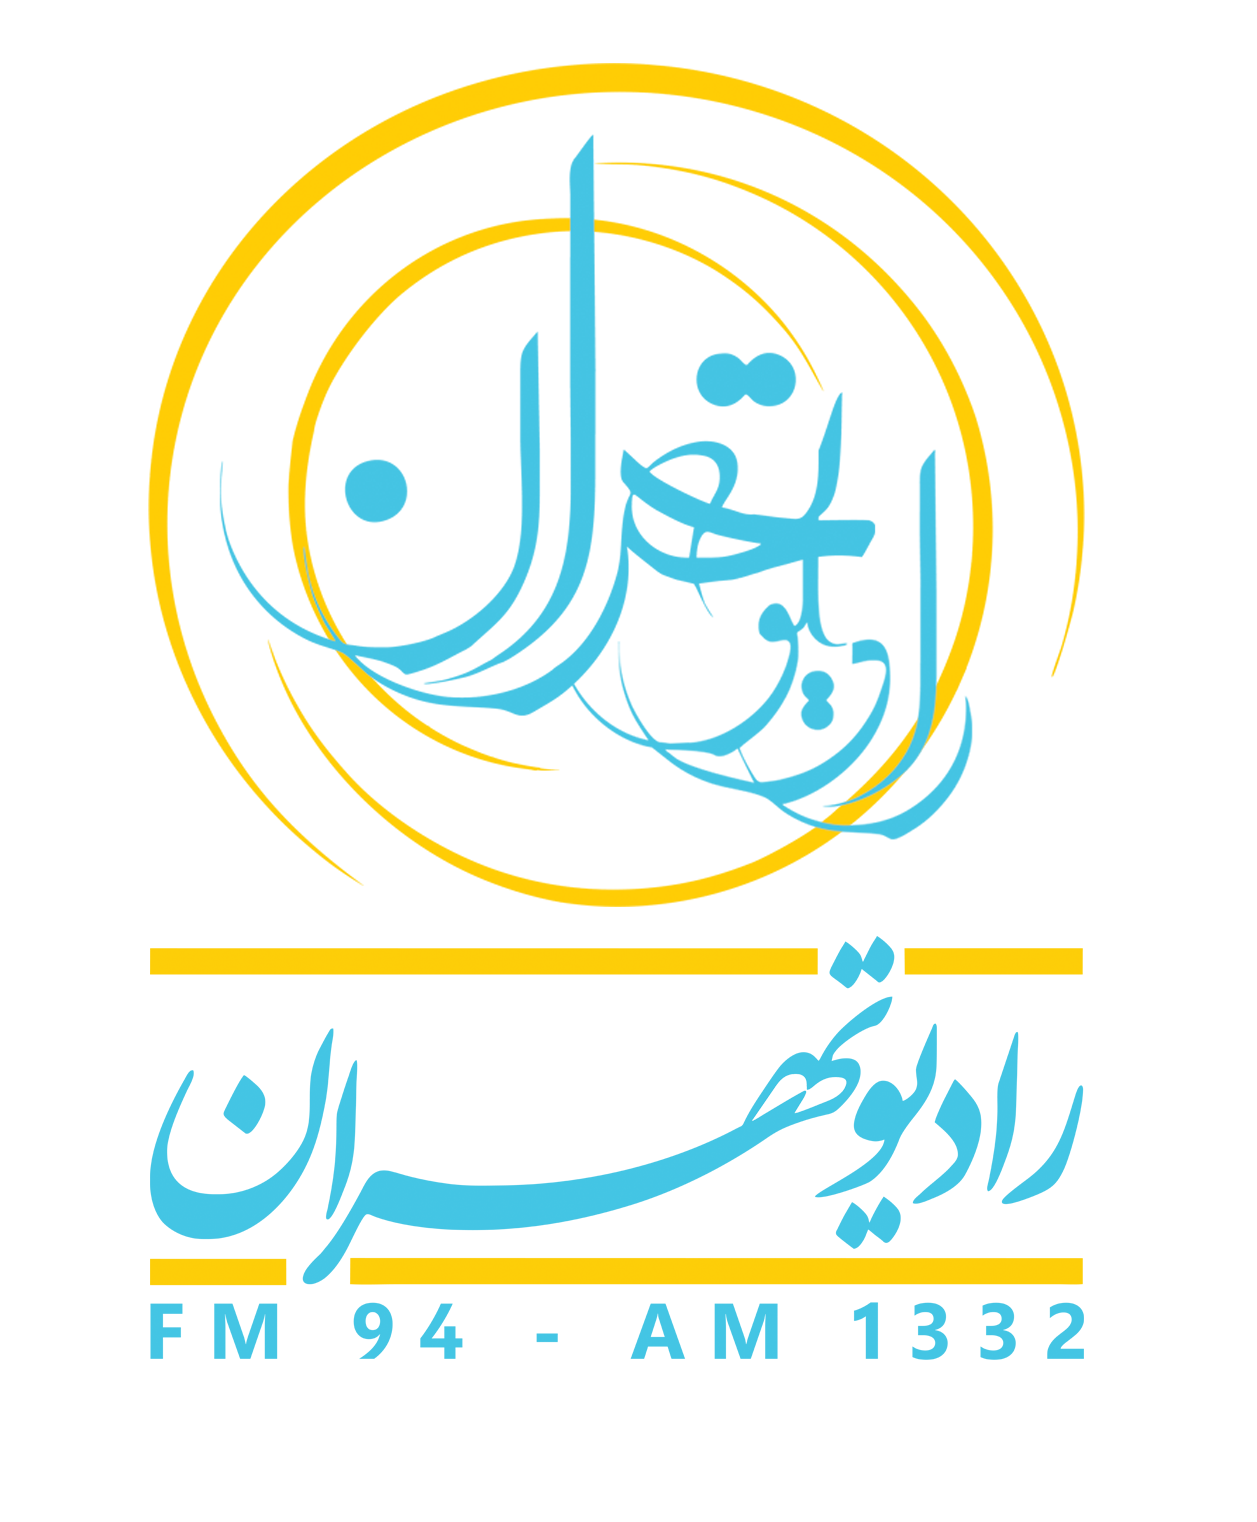 رادیو تهران